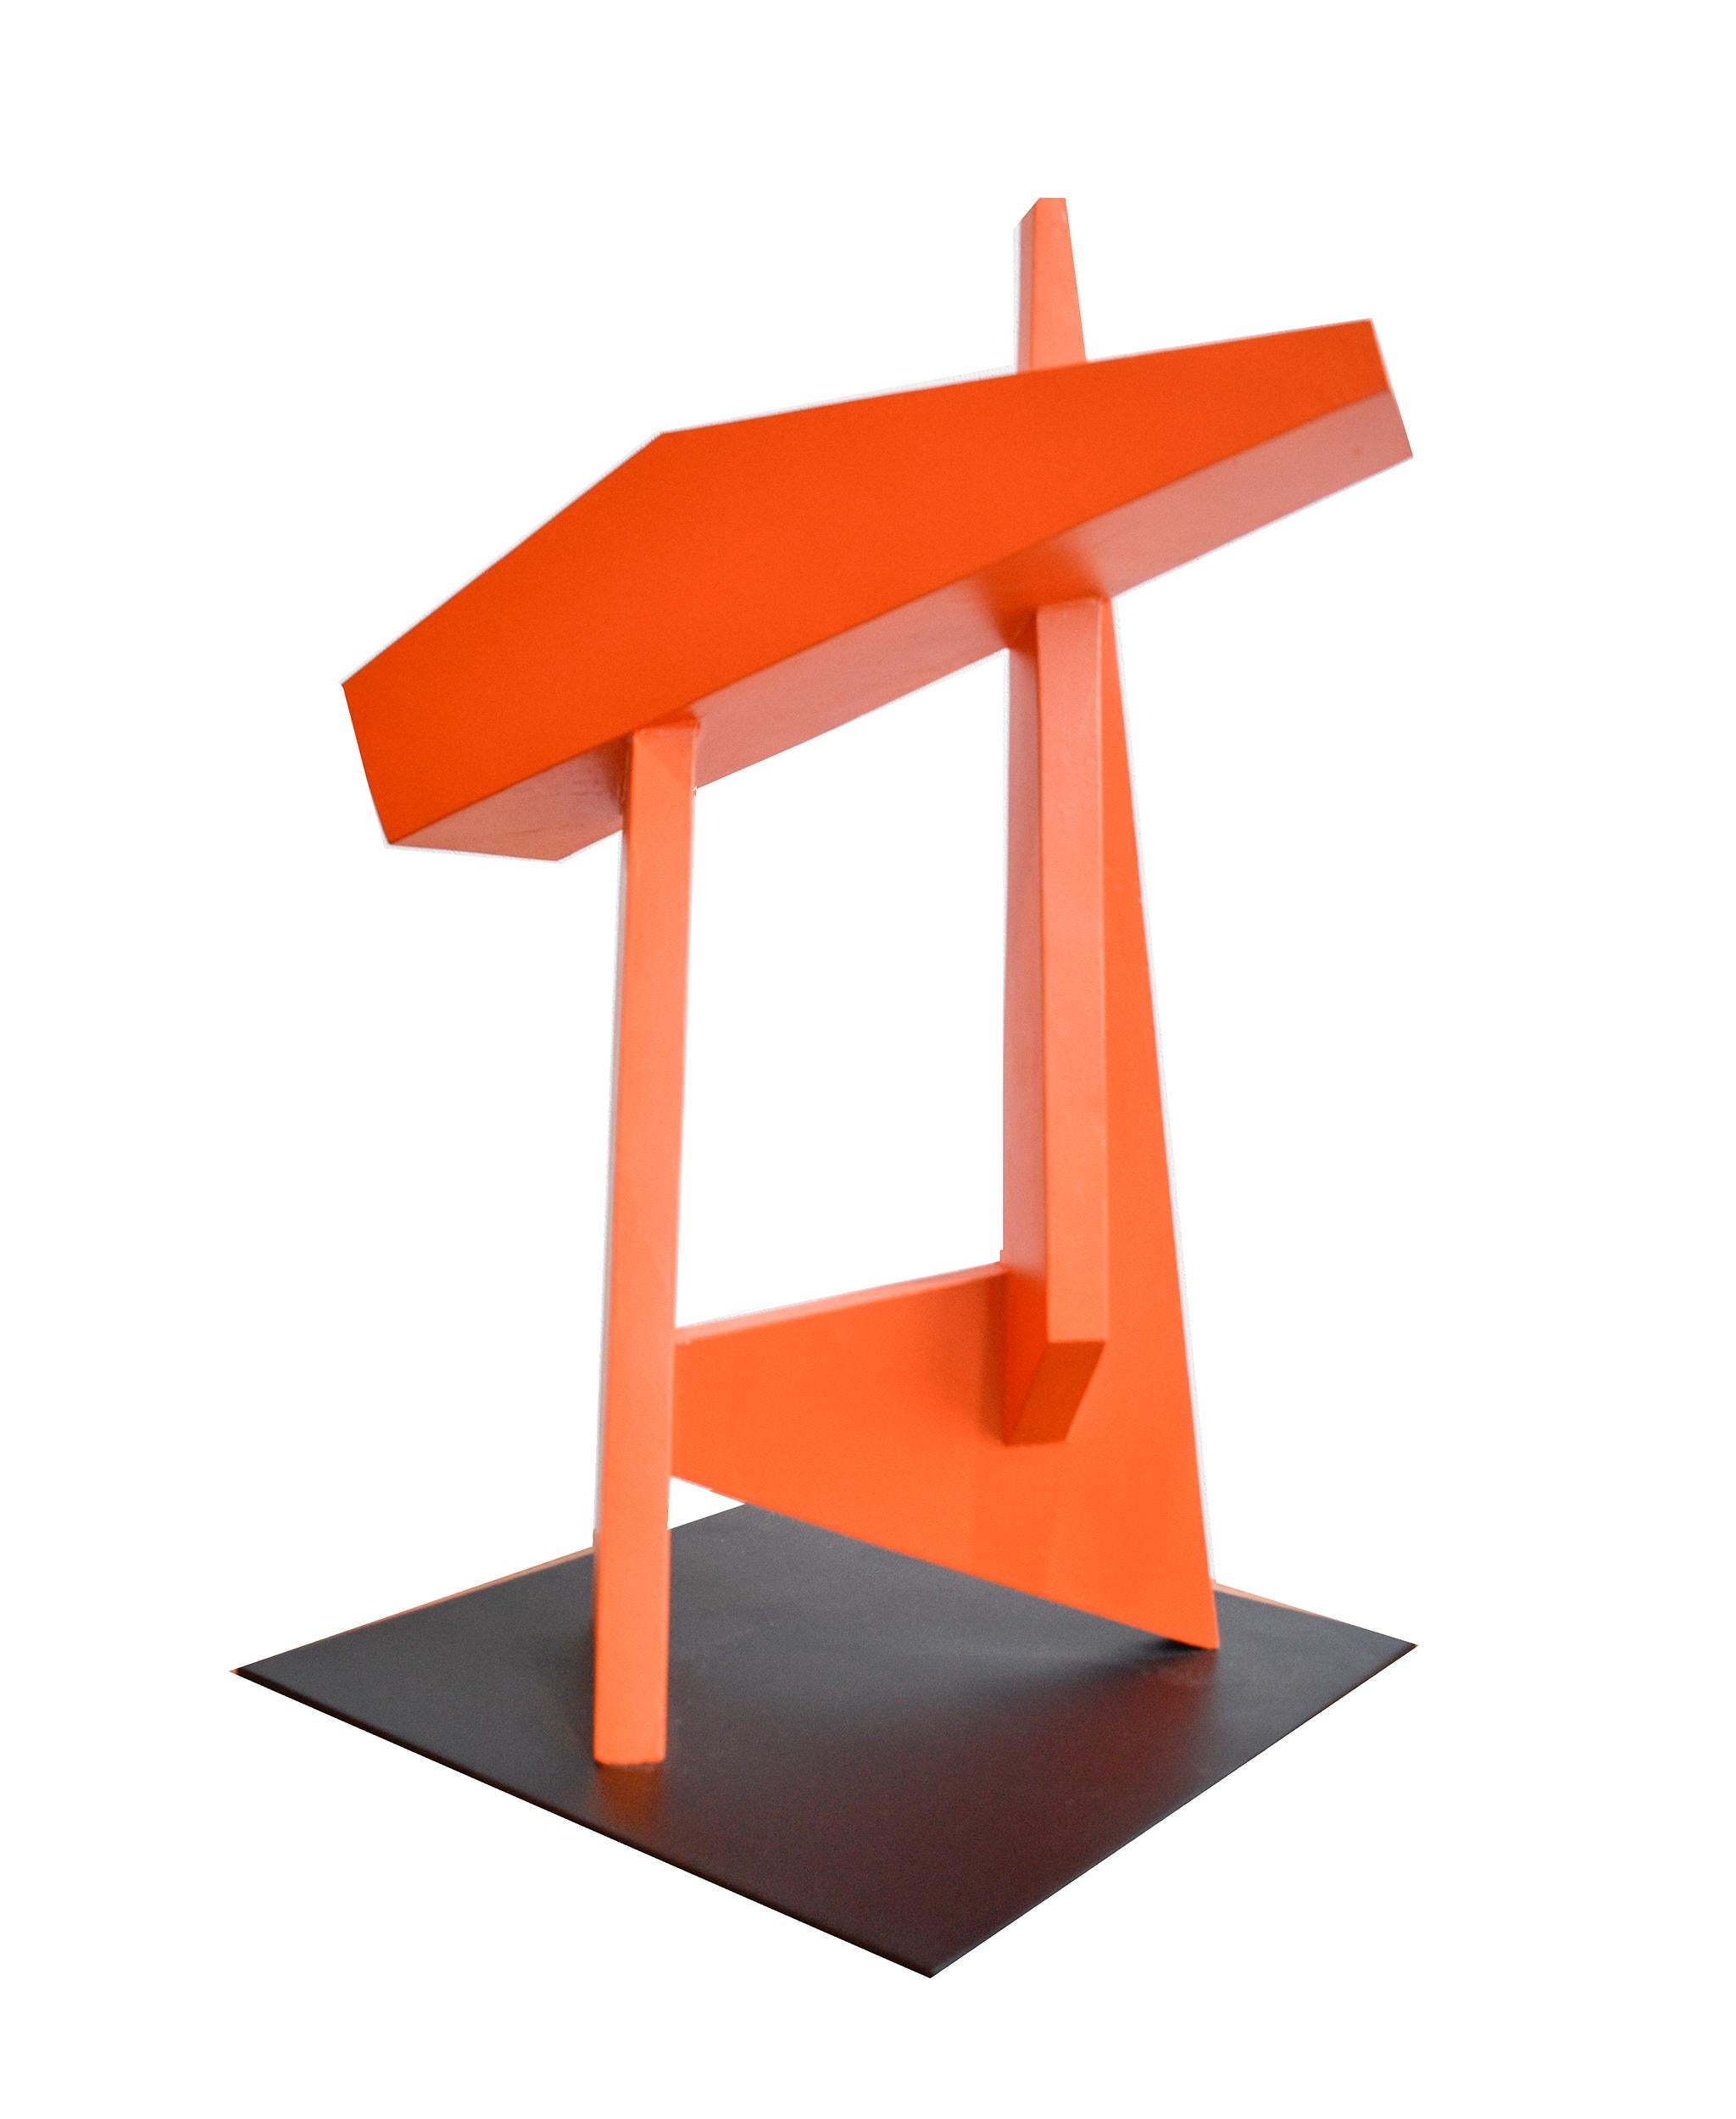 The Gate (Minimalistische abstrakte Skulptur des neuen Brutalismus in leuchtendem Rot-Orange) 